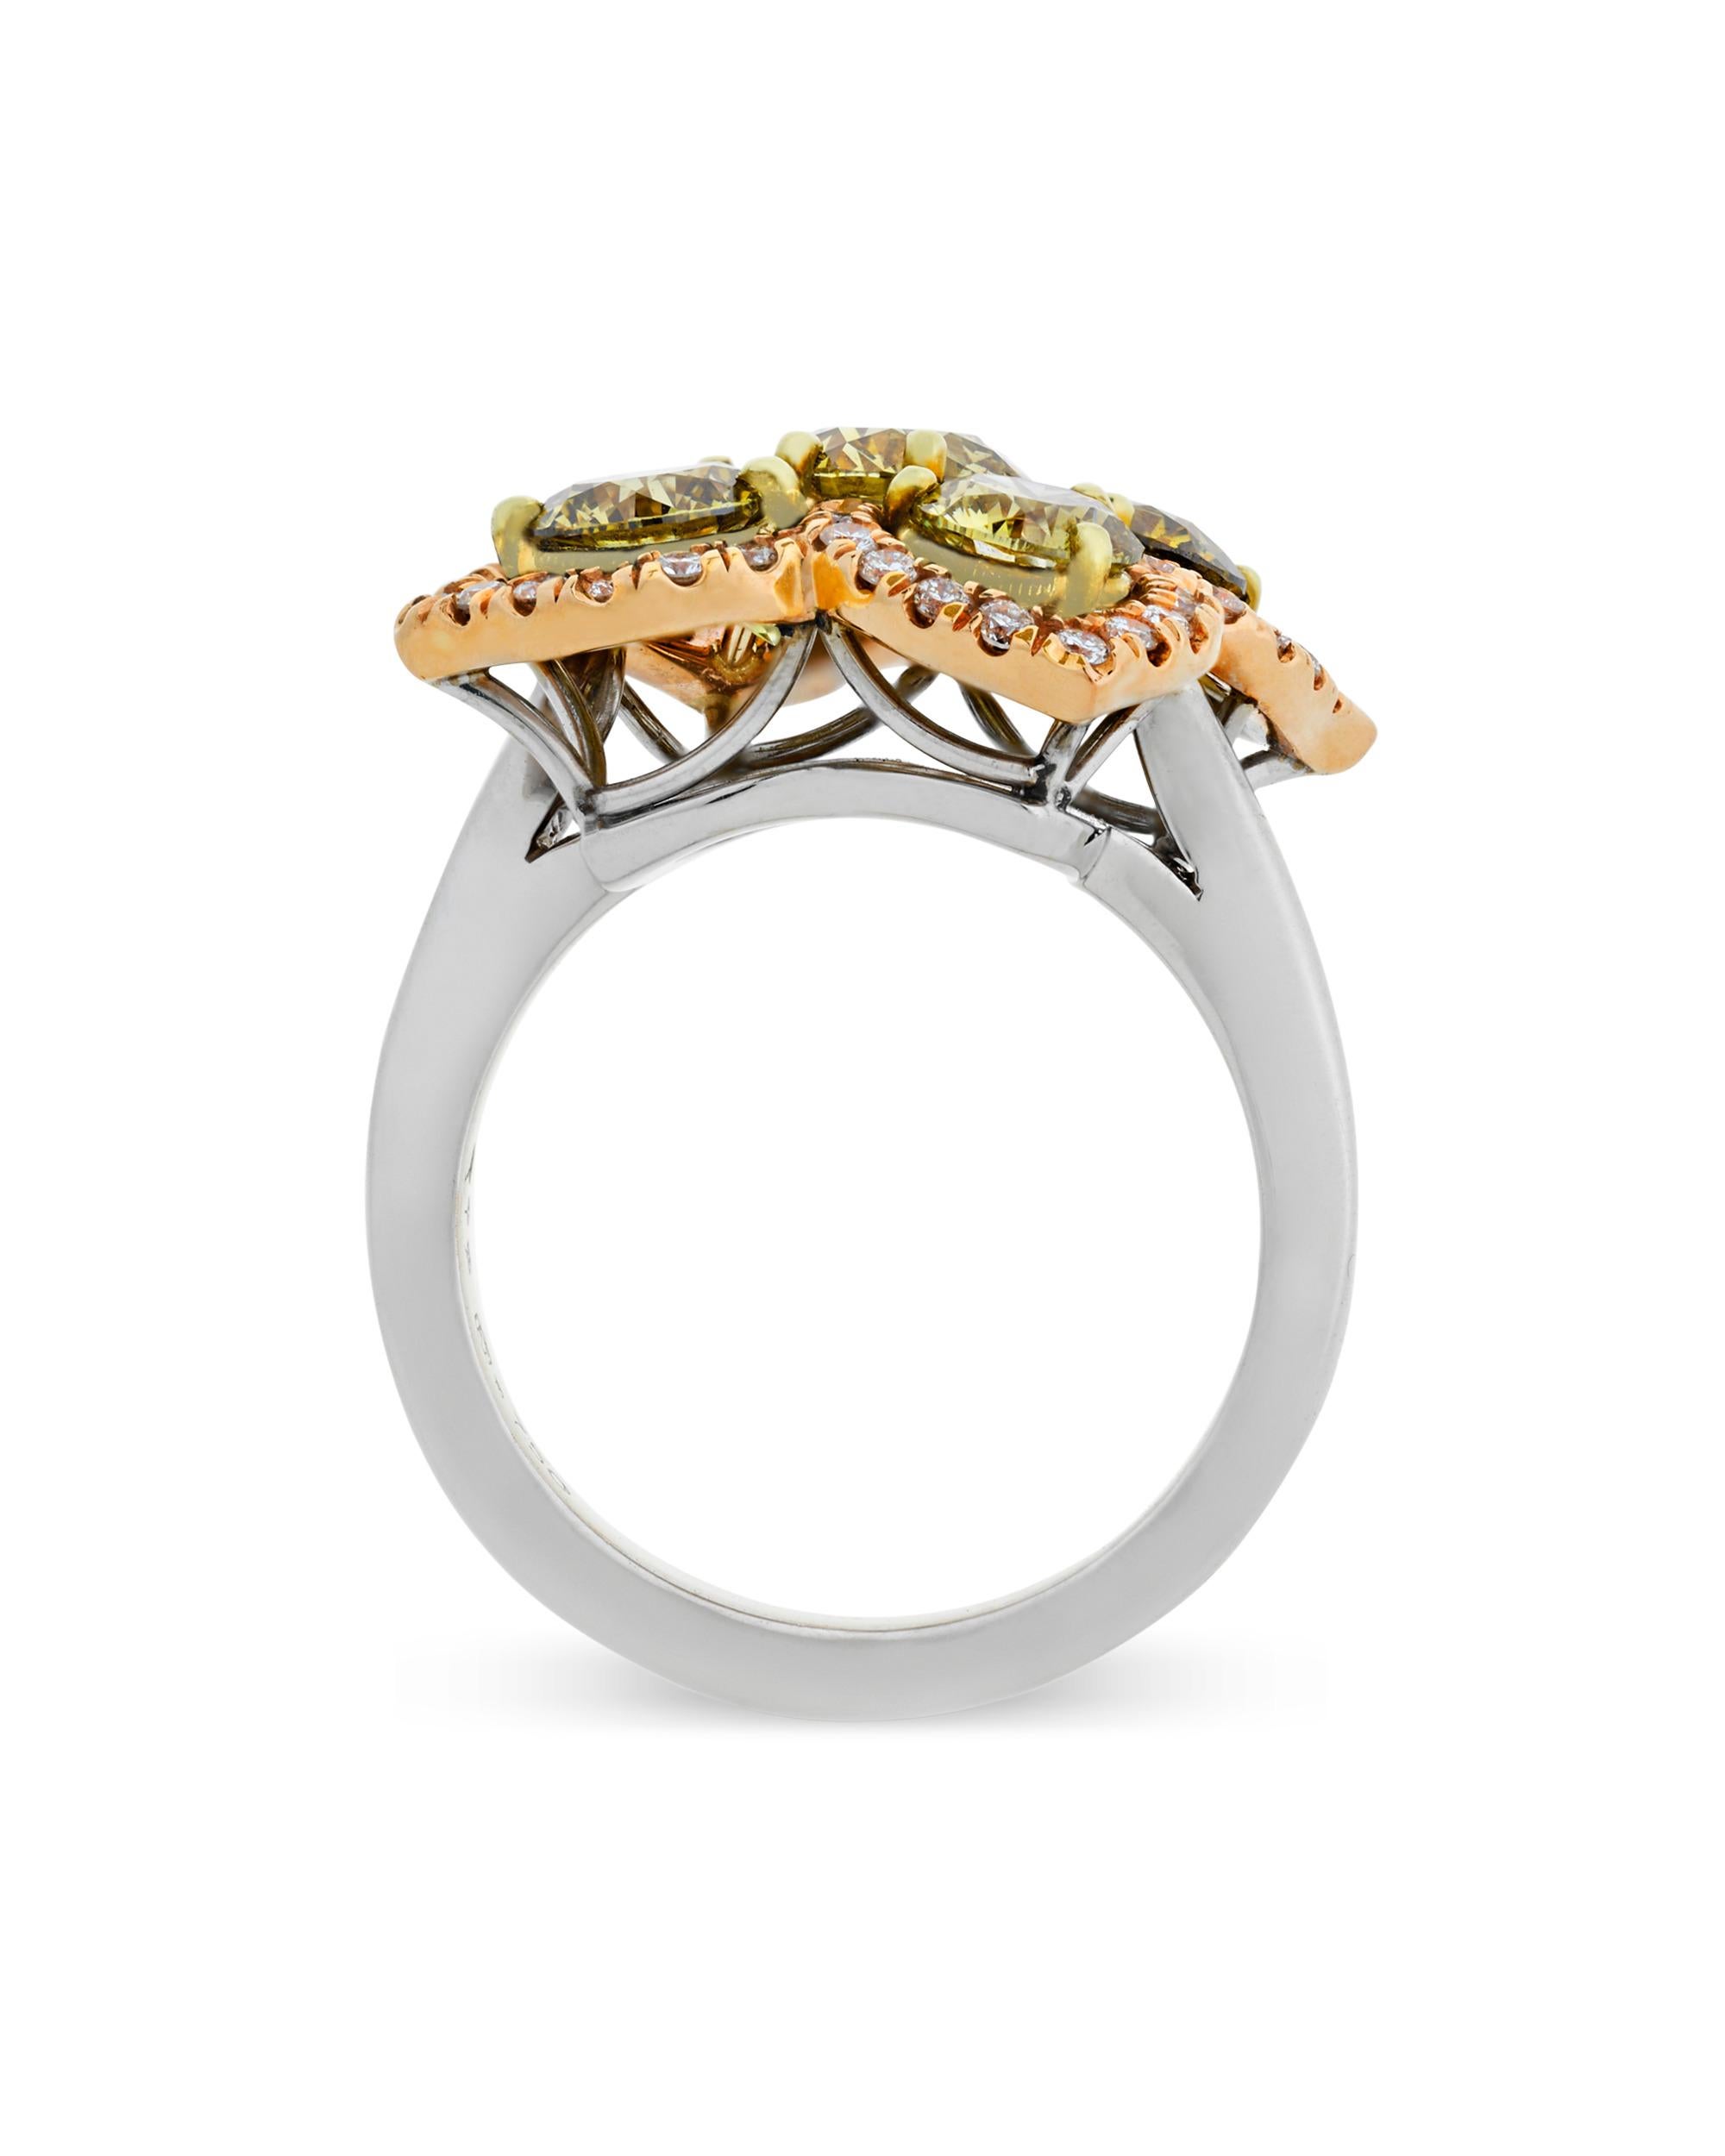 Modern Chameleon Diamond Ring, 2.67 Carat